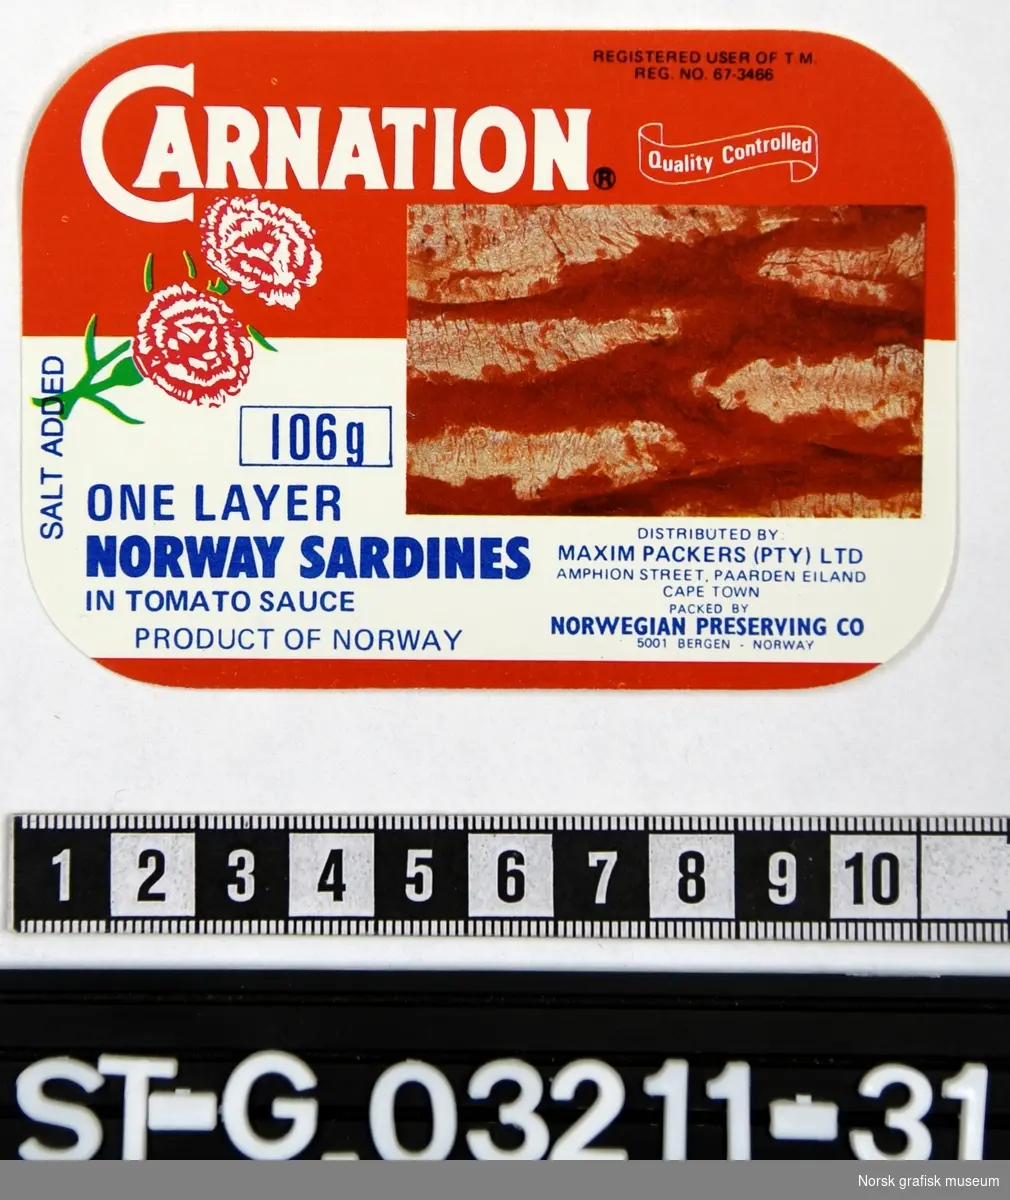 Etikett i rødt, hvitt, blått og grønt. Hovedmotiv er en fremstilling av innholdet i boksen (ett-lags sardiner), og ved siden av er en stilisert fremstilling av to blomster (nellik). 

"One layer Norway sardines in tomato sauce"